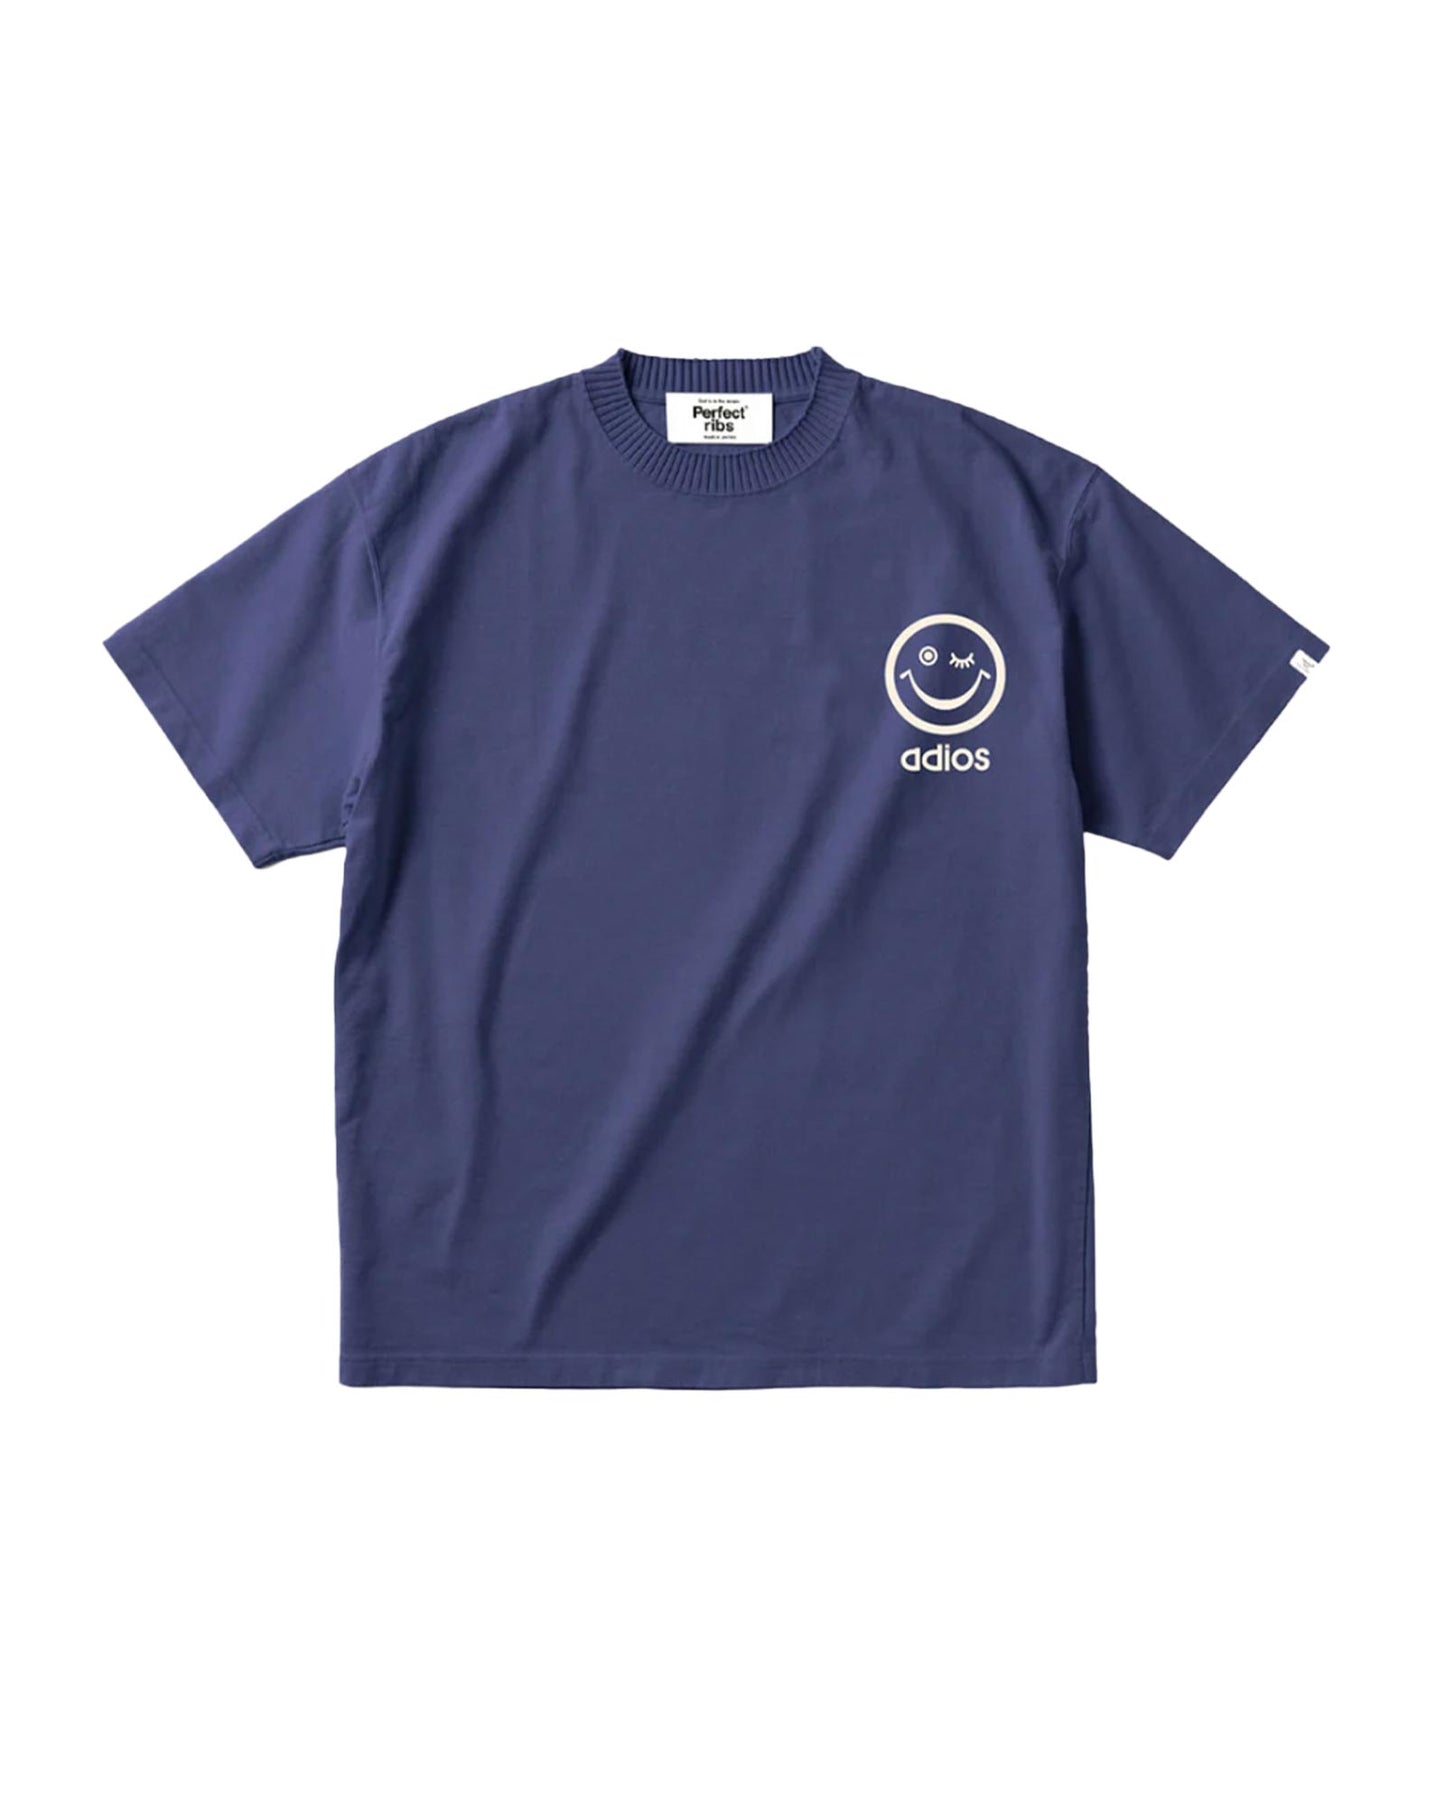 パーフェクトリブス/(RELAX NO PROBLEM) Basic Short Sleeve T Shirts/Tシャツ/Navy